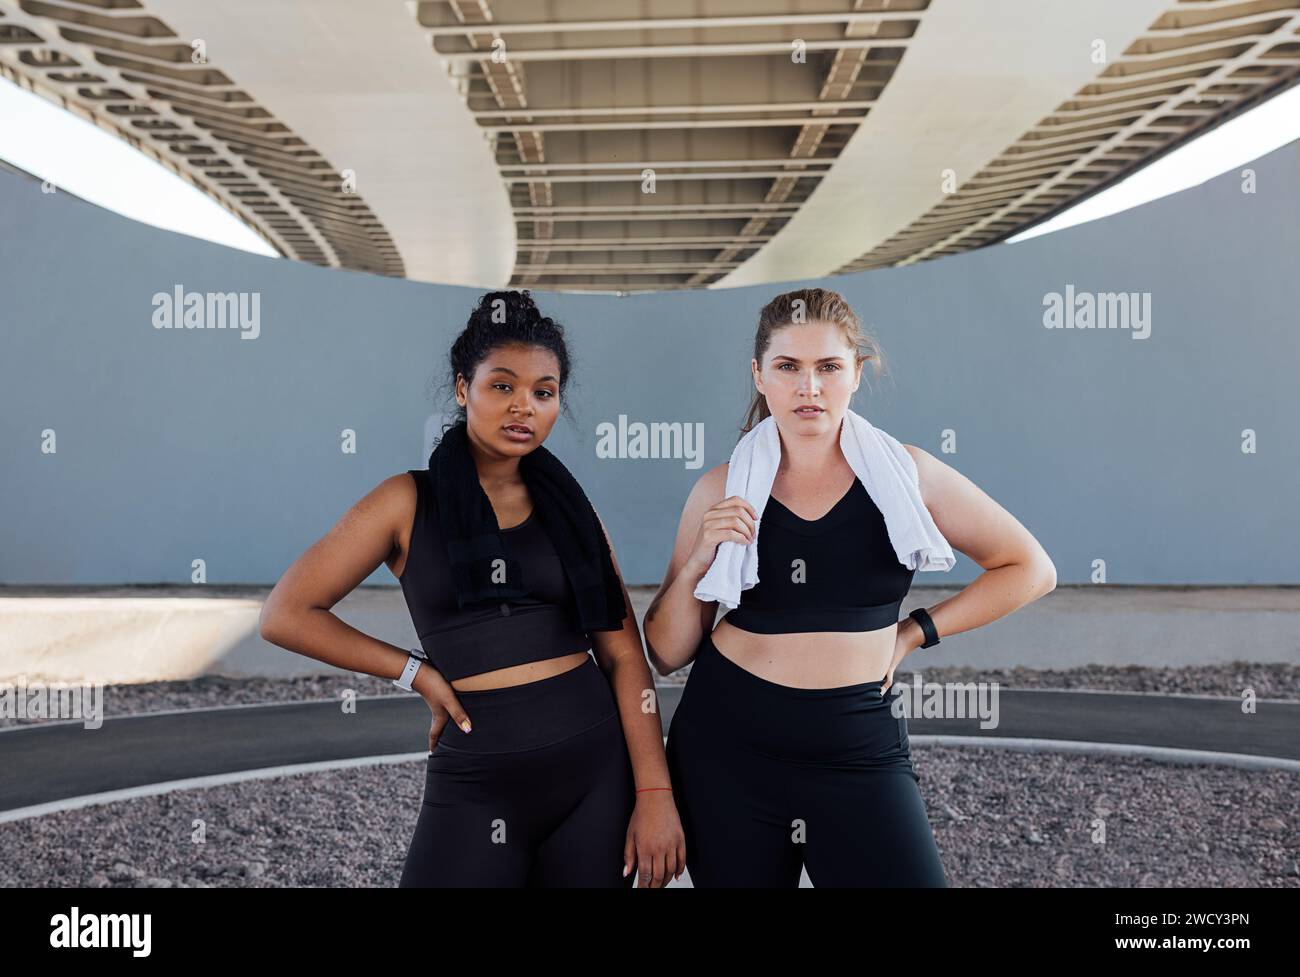 Portrait de deux femmes en vêtements de fitness noirs avec des serviettes sur le cou. Les jeunes sportives sont relaxantes en plein air. Banque D'Images